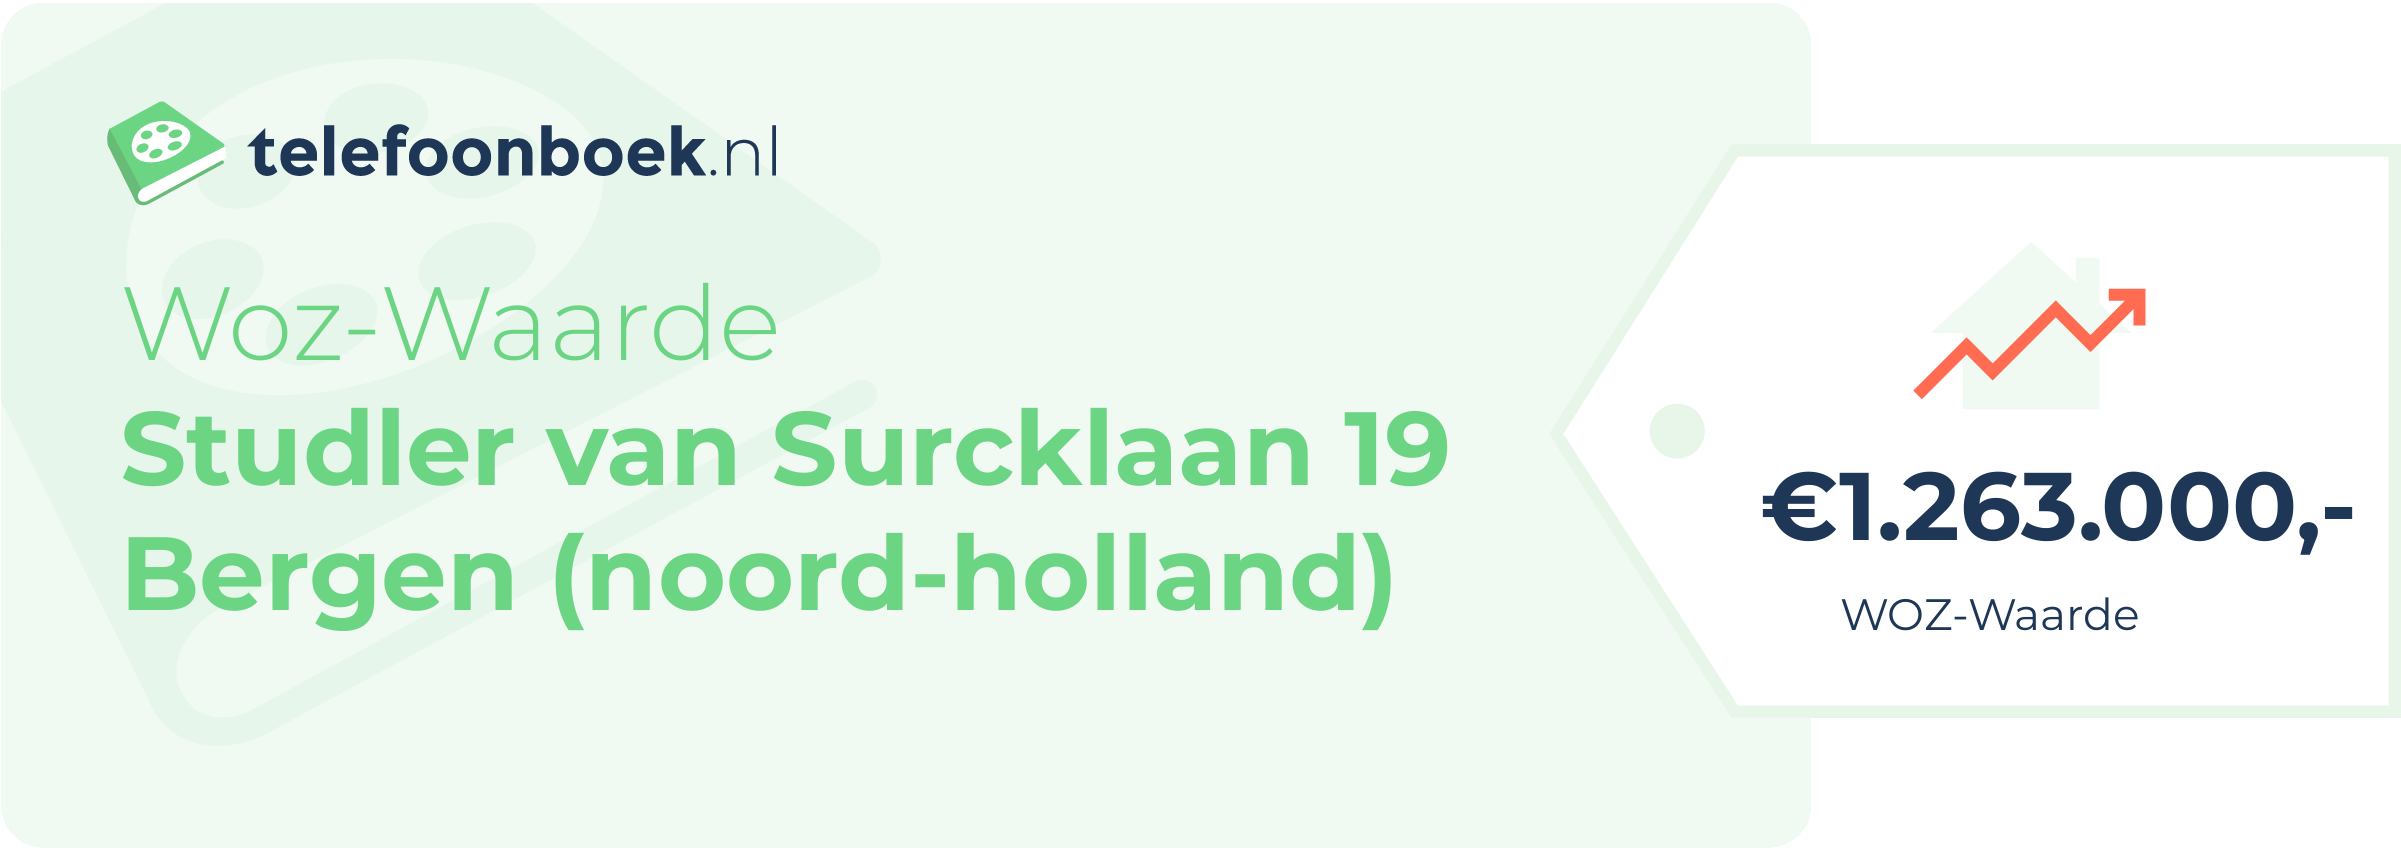 WOZ-waarde Studler Van Surcklaan 19 Bergen (Noord-Holland)